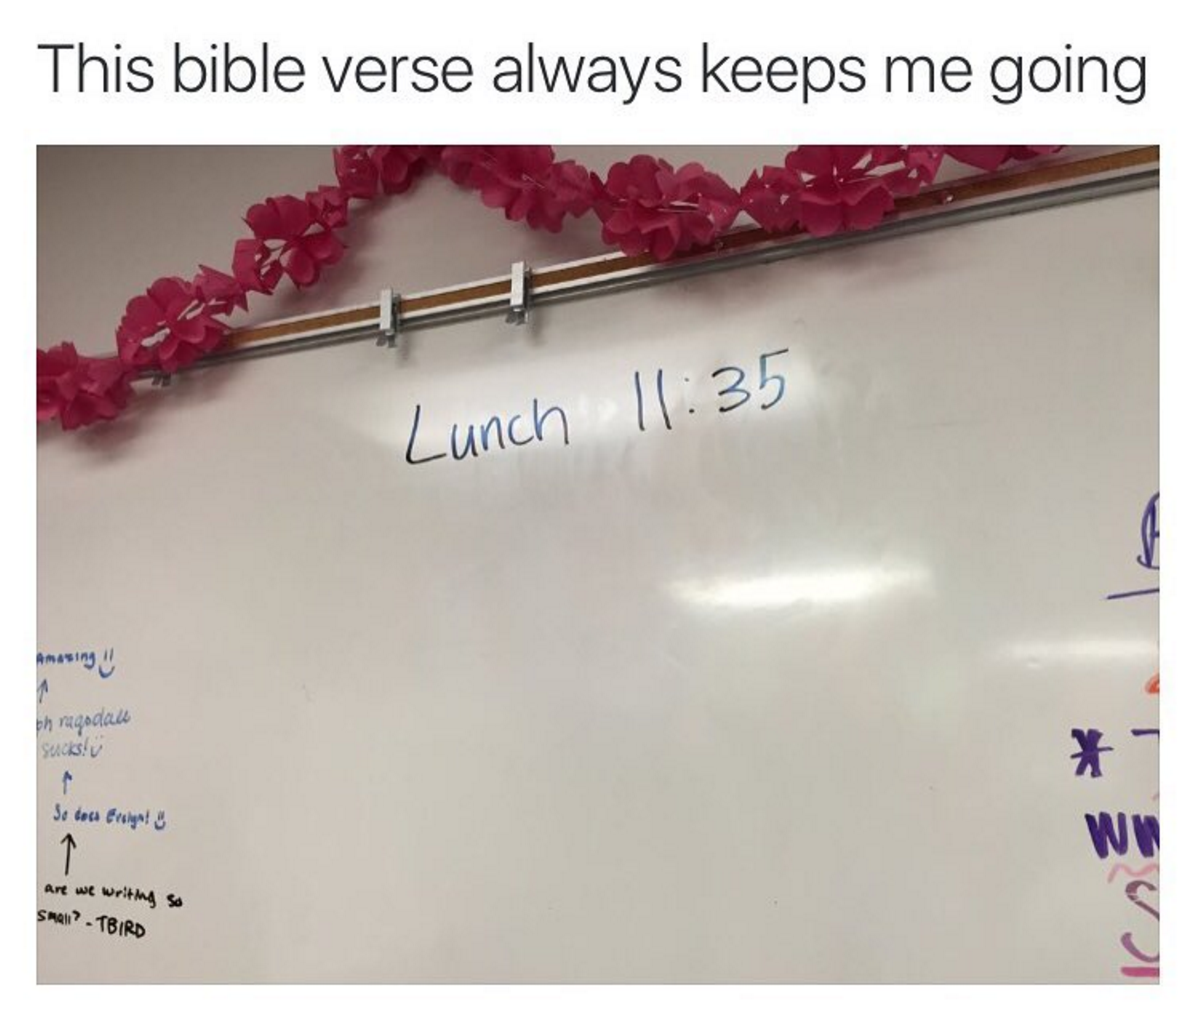 Mon verset préféré de la bible